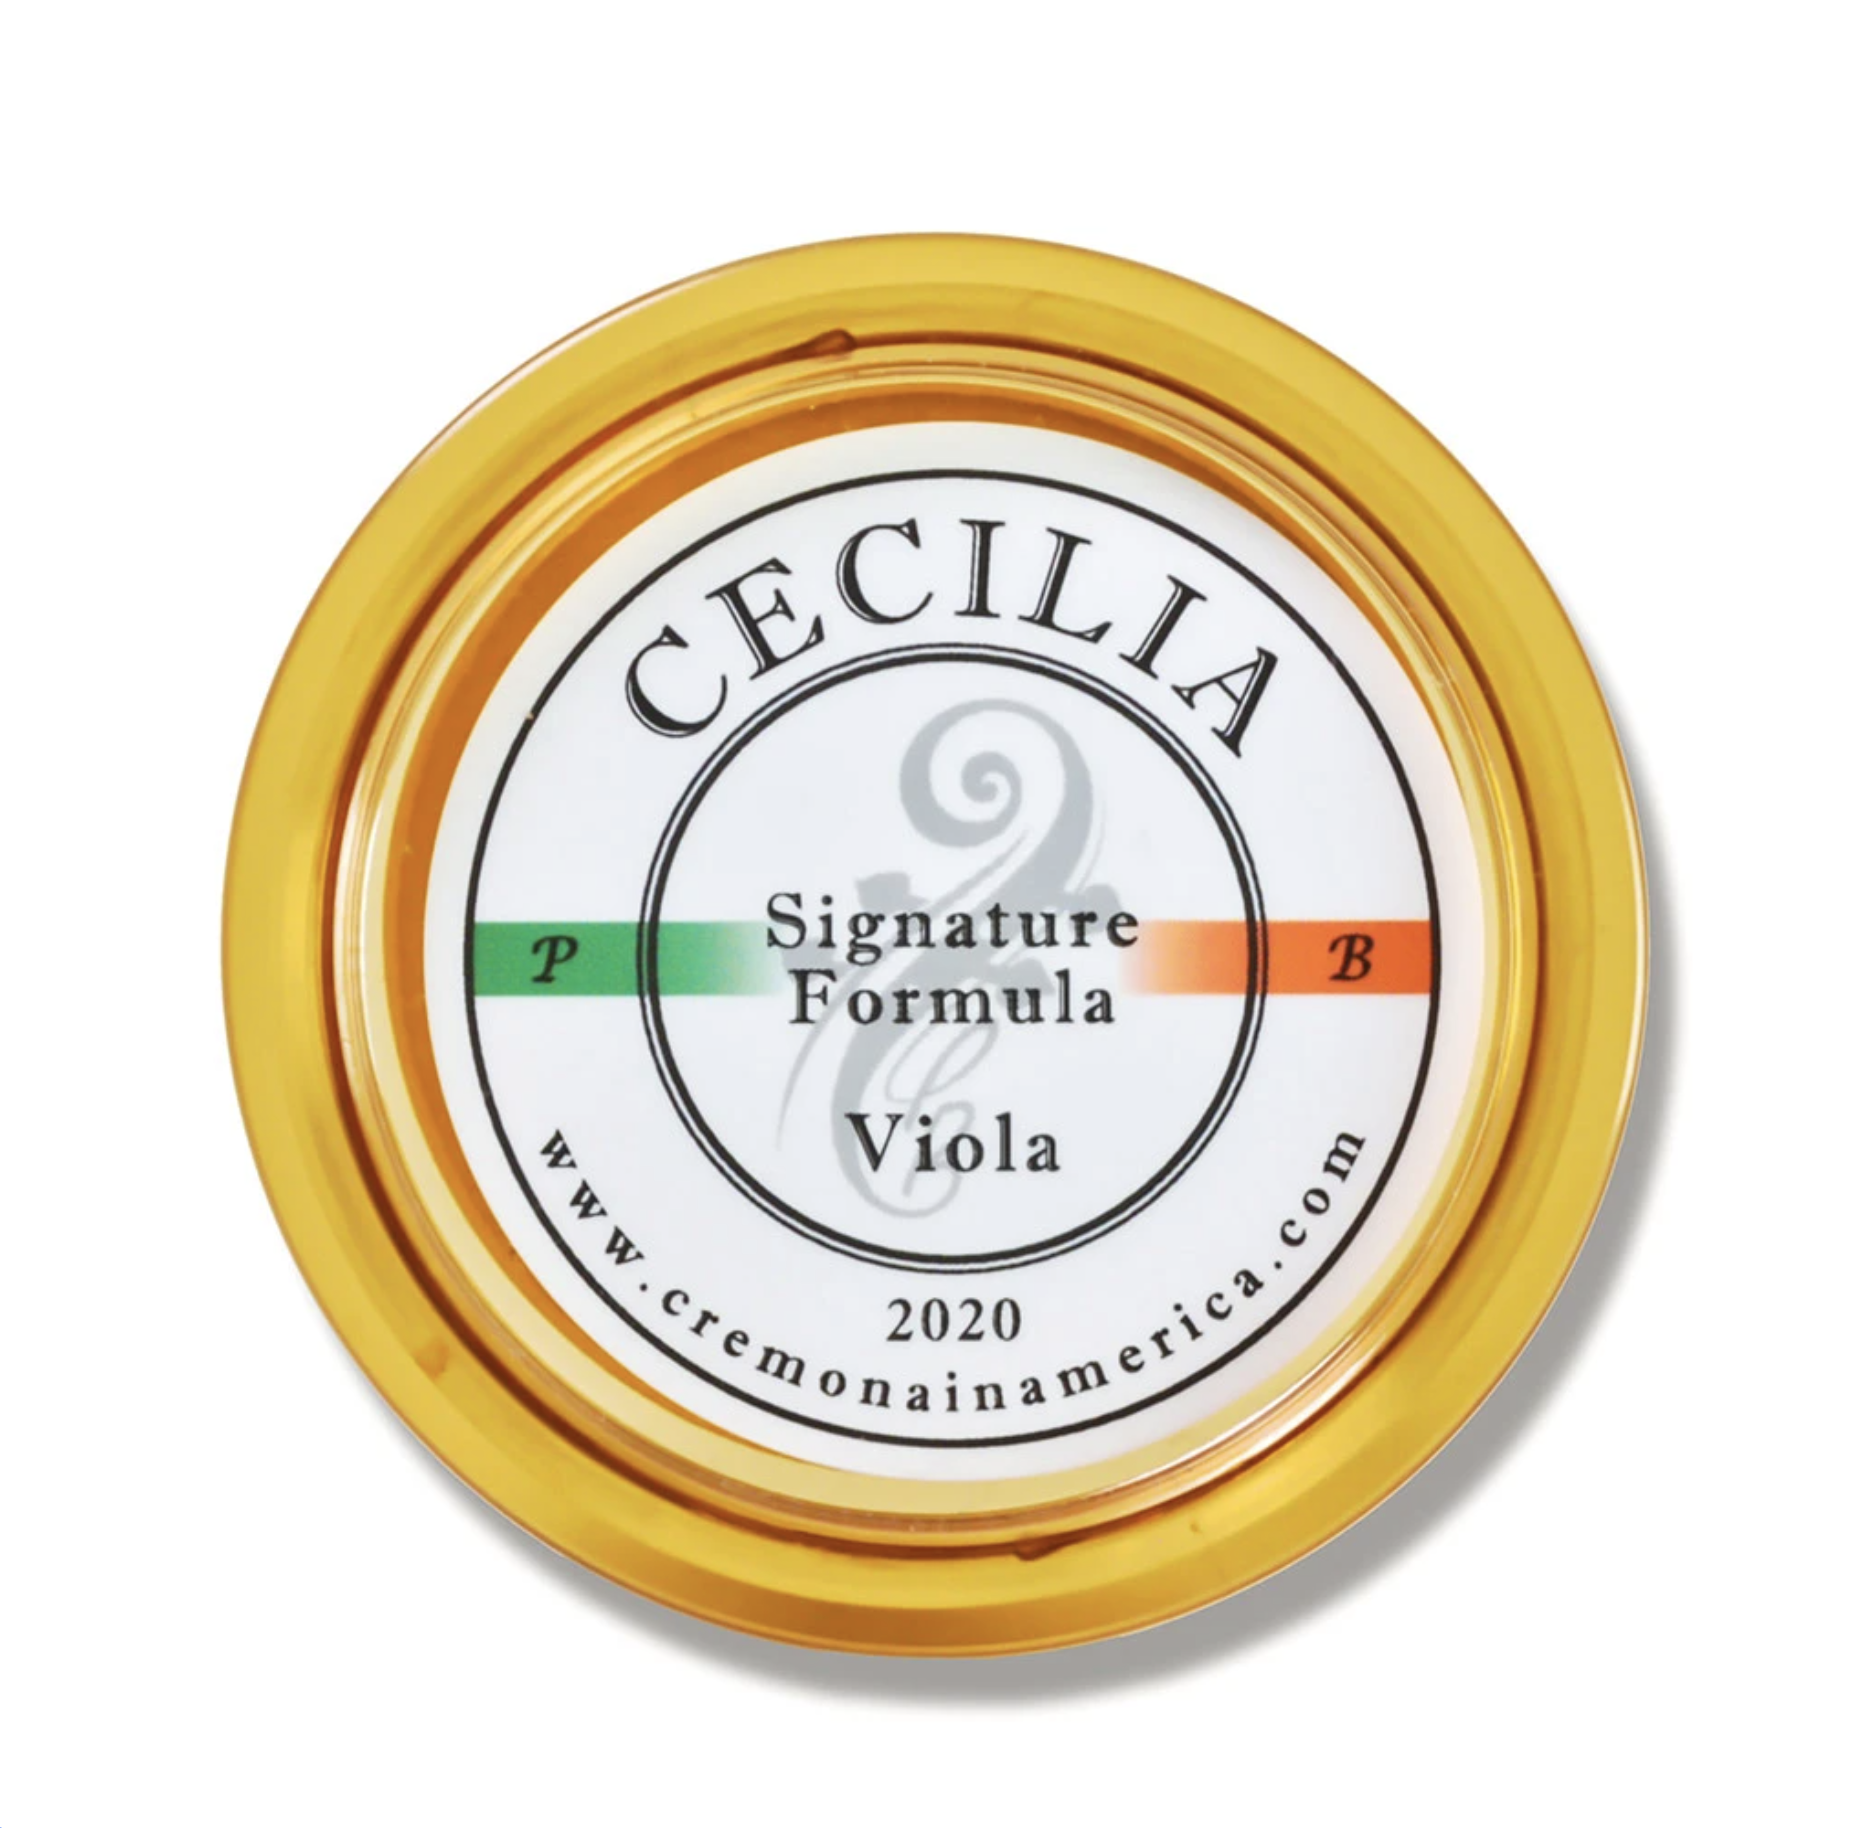 Andrea Cecilia ''Signature'' viola rosin by Cremona in America, USA